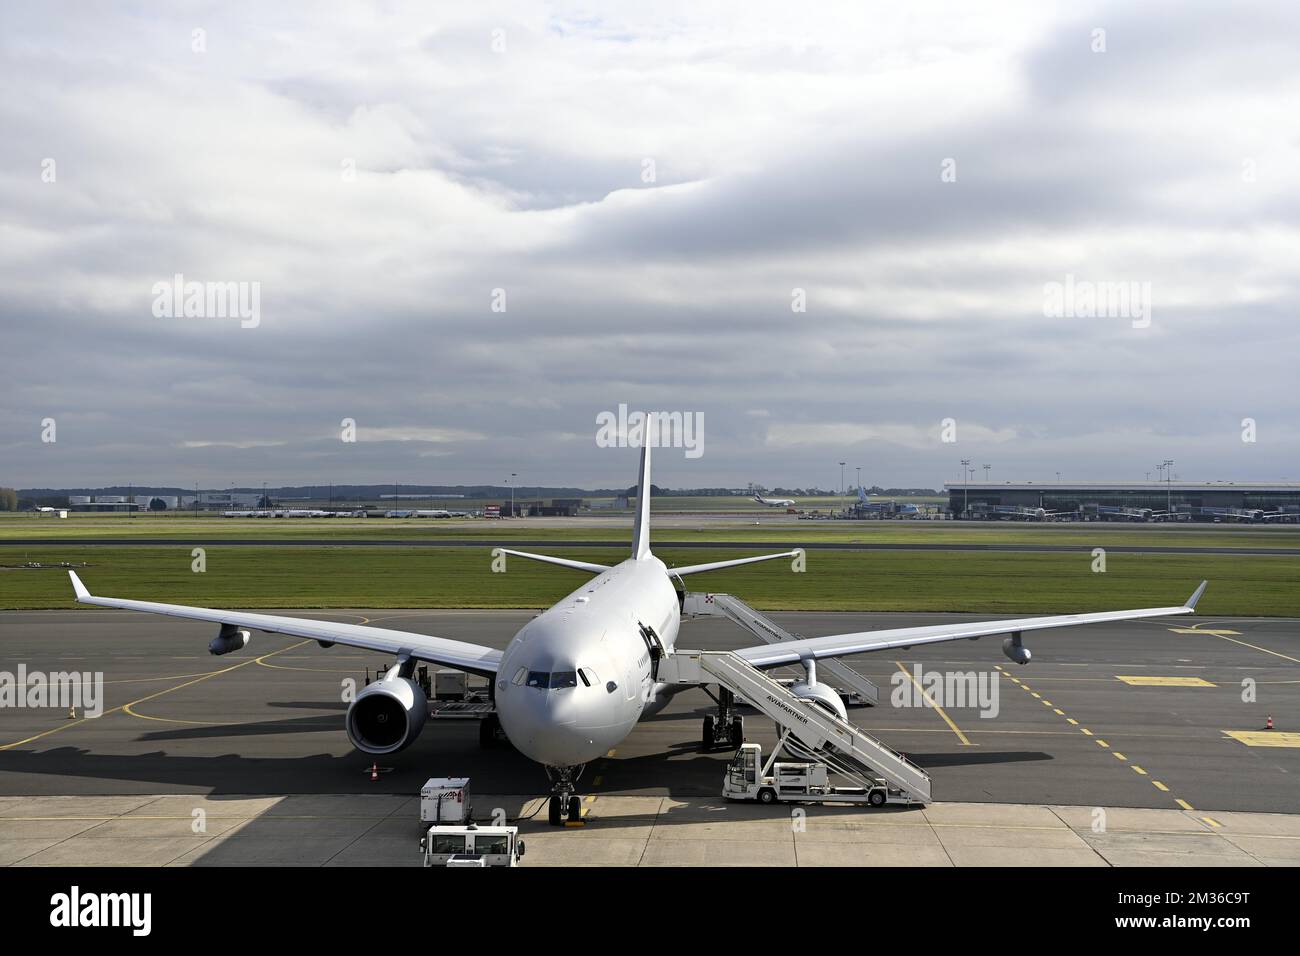 L'illustration montre l'Airbus A330 MRTT avant le départ à l'aéroport militaire de Melsbroek pour une visite de travail royale au Danemark, pour discuter des stratégies d'emploi et de formation, lundi 25 octobre 2021 à Copenhague, Danemark. BELGA PHOTO ERIC LALMAND Banque D'Images